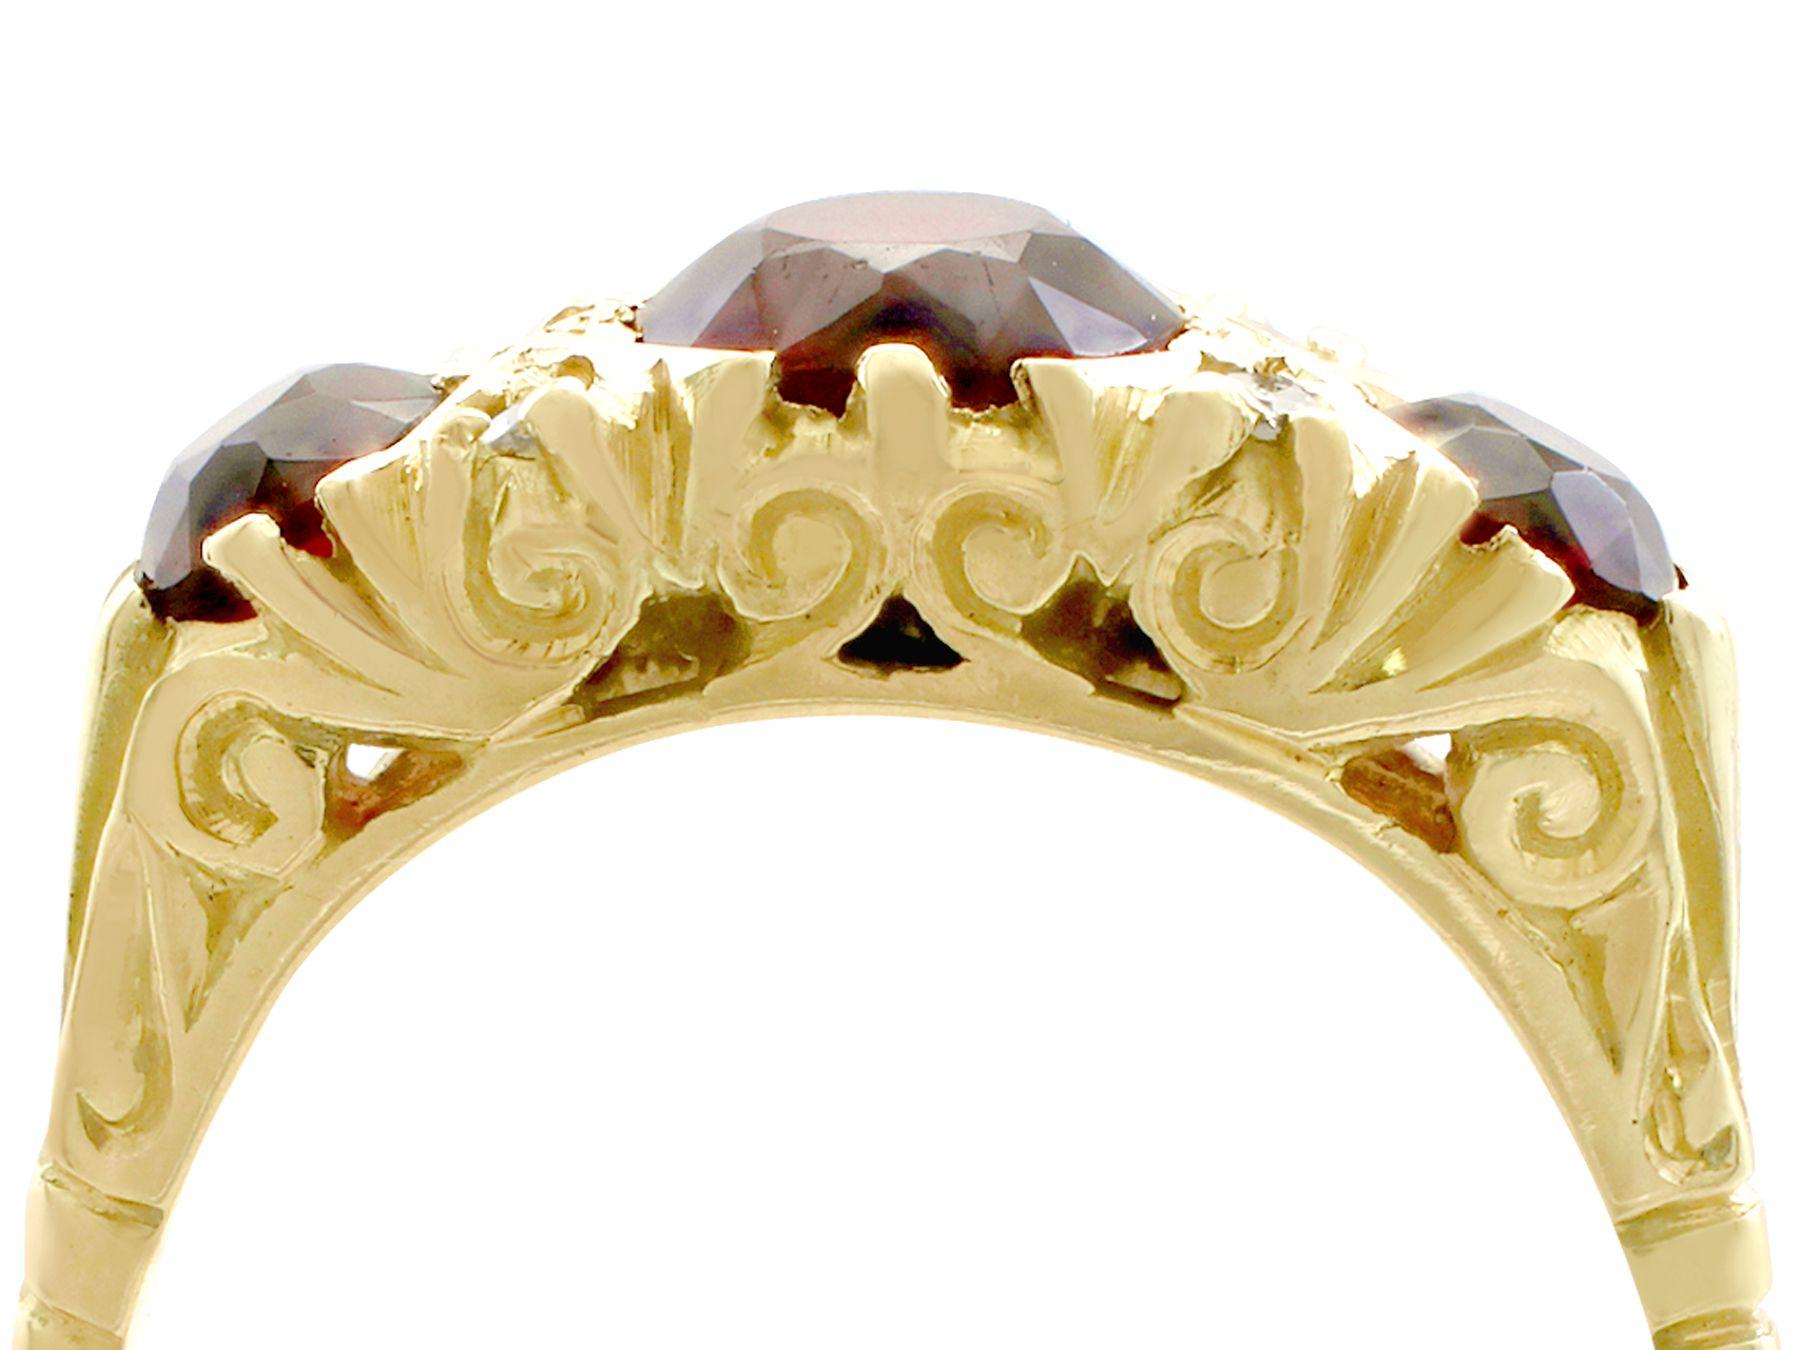 Ein feiner und beeindruckender Ring aus 18 Karat Gelbgold mit einem Granat von 2,05 Karat und einem Diamanten von 0,08 Karat; Teil unserer vielfältigen Vintage-Schmuckkollektionen.

Dieser schöne und beeindruckende Vintage-Ring mit Granat und